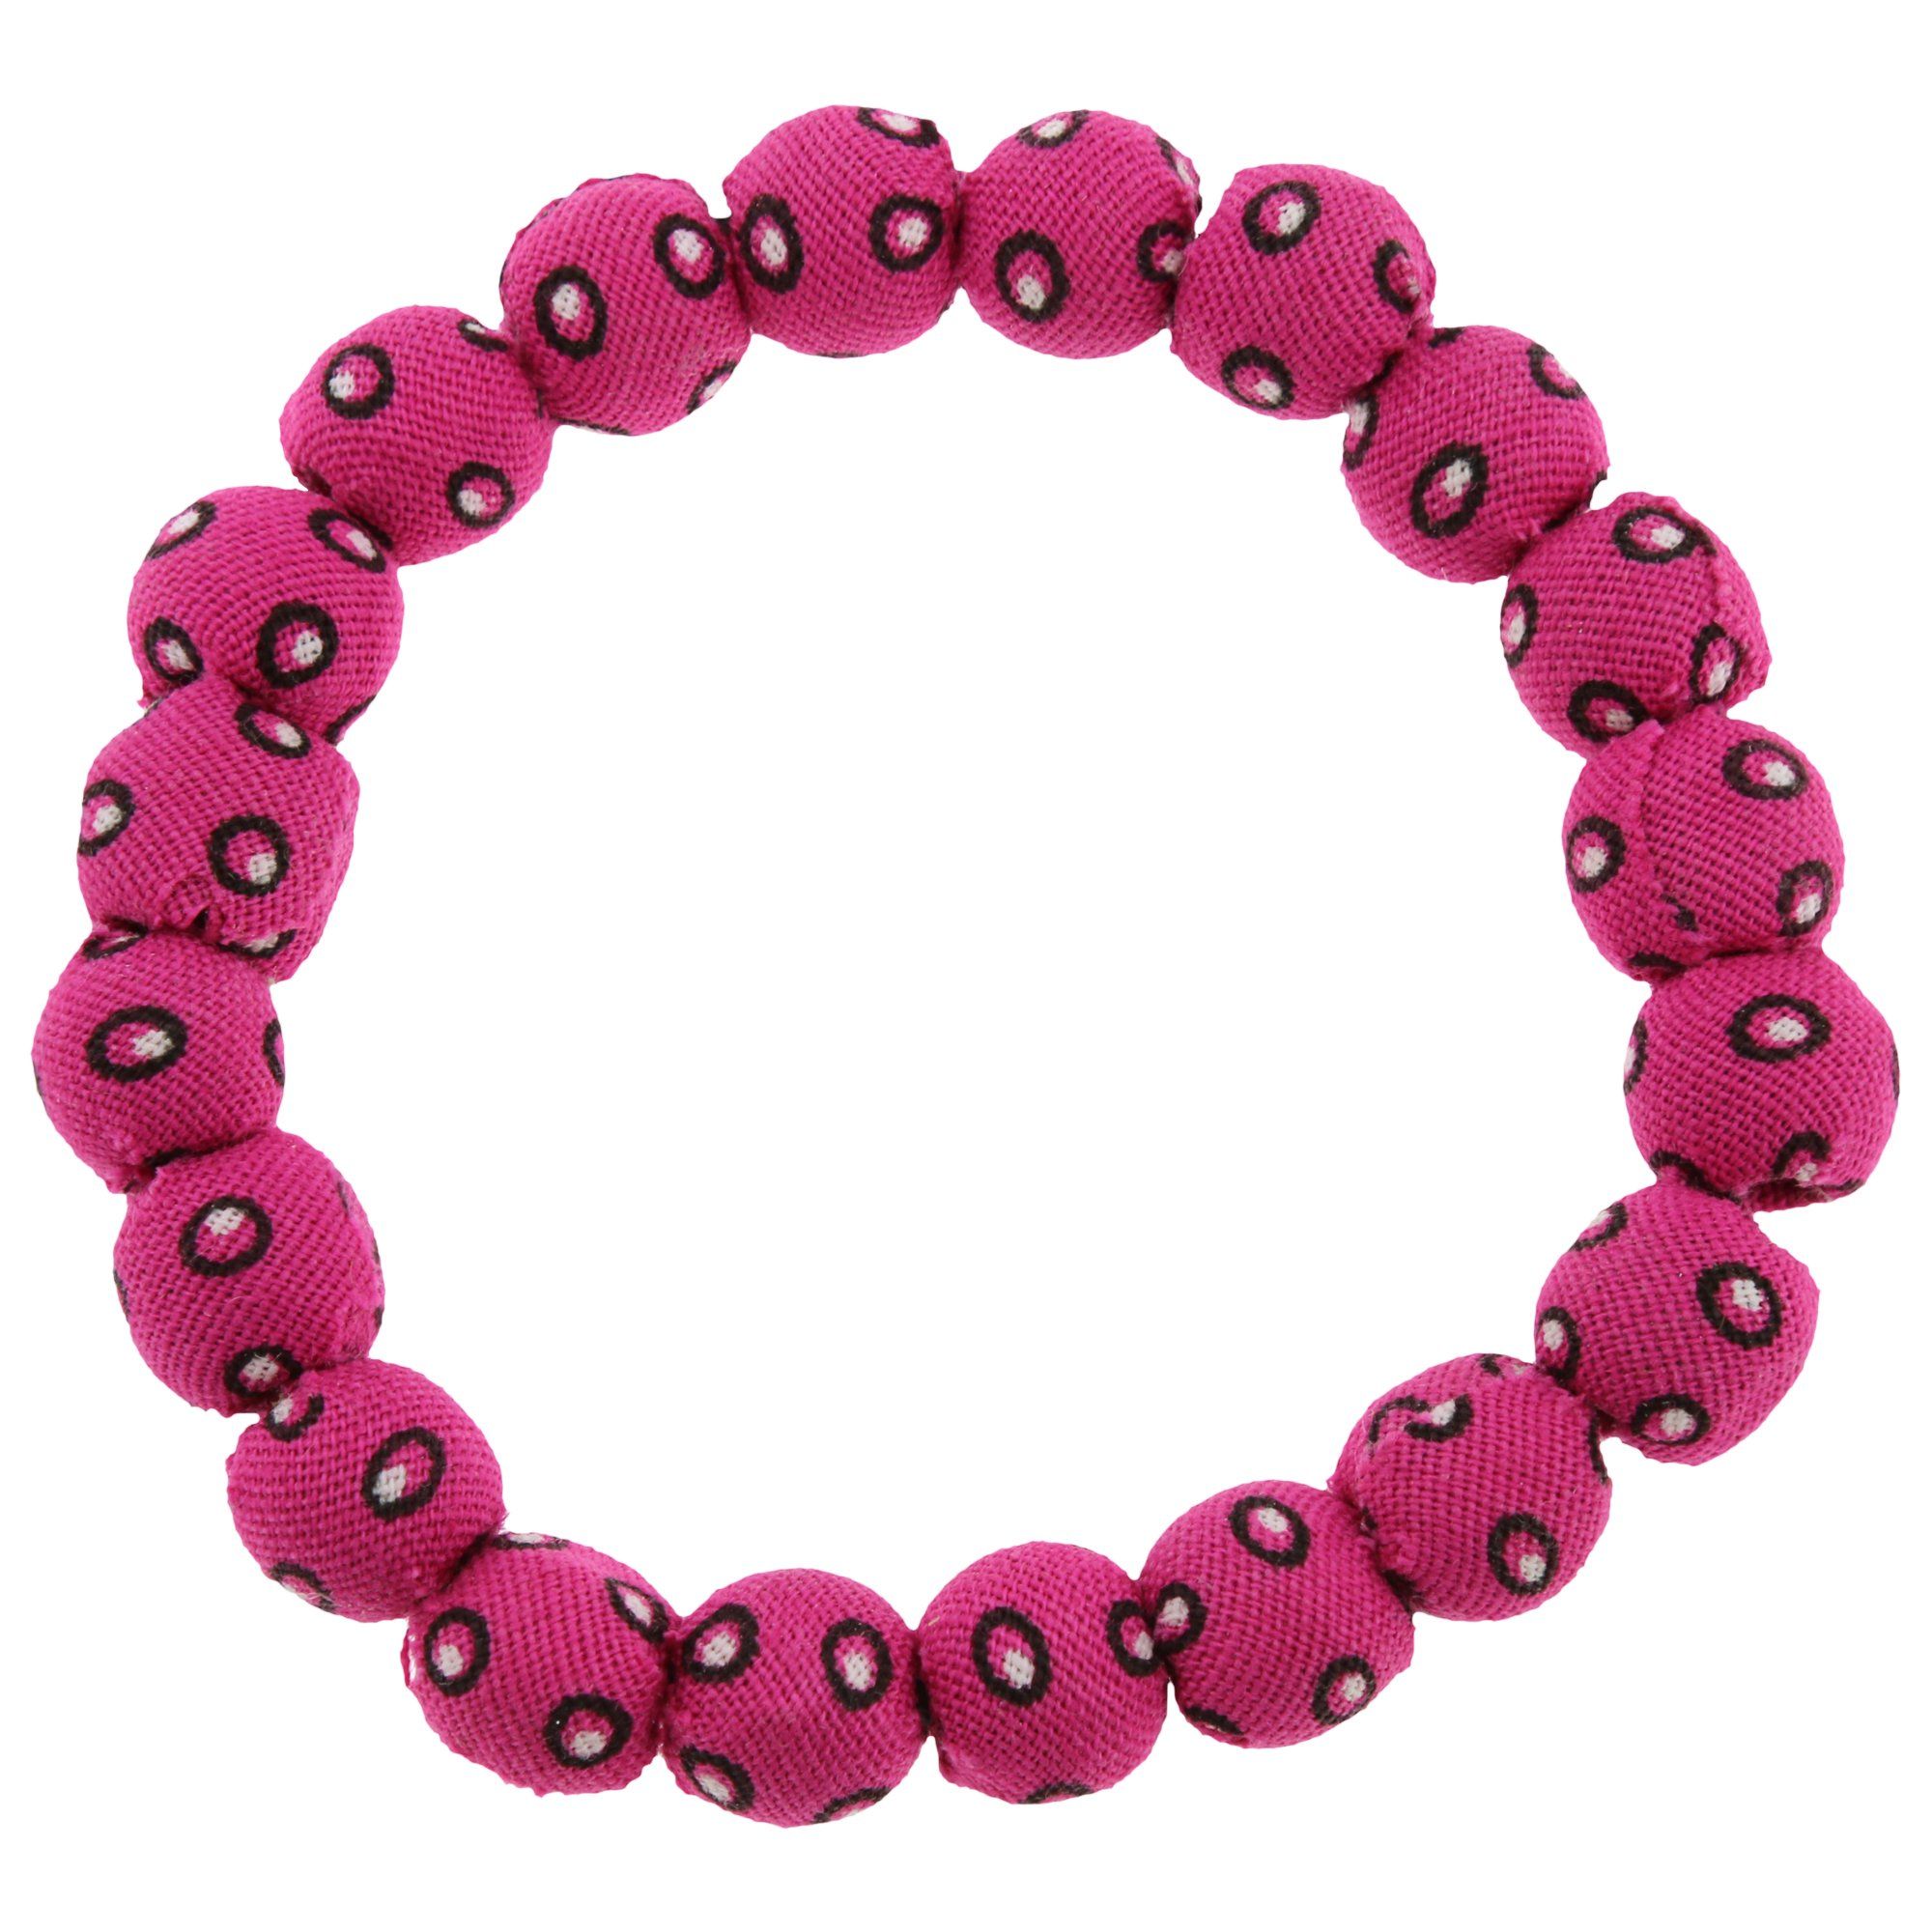 ShweShwe Bead Ball Bracelet - Pink